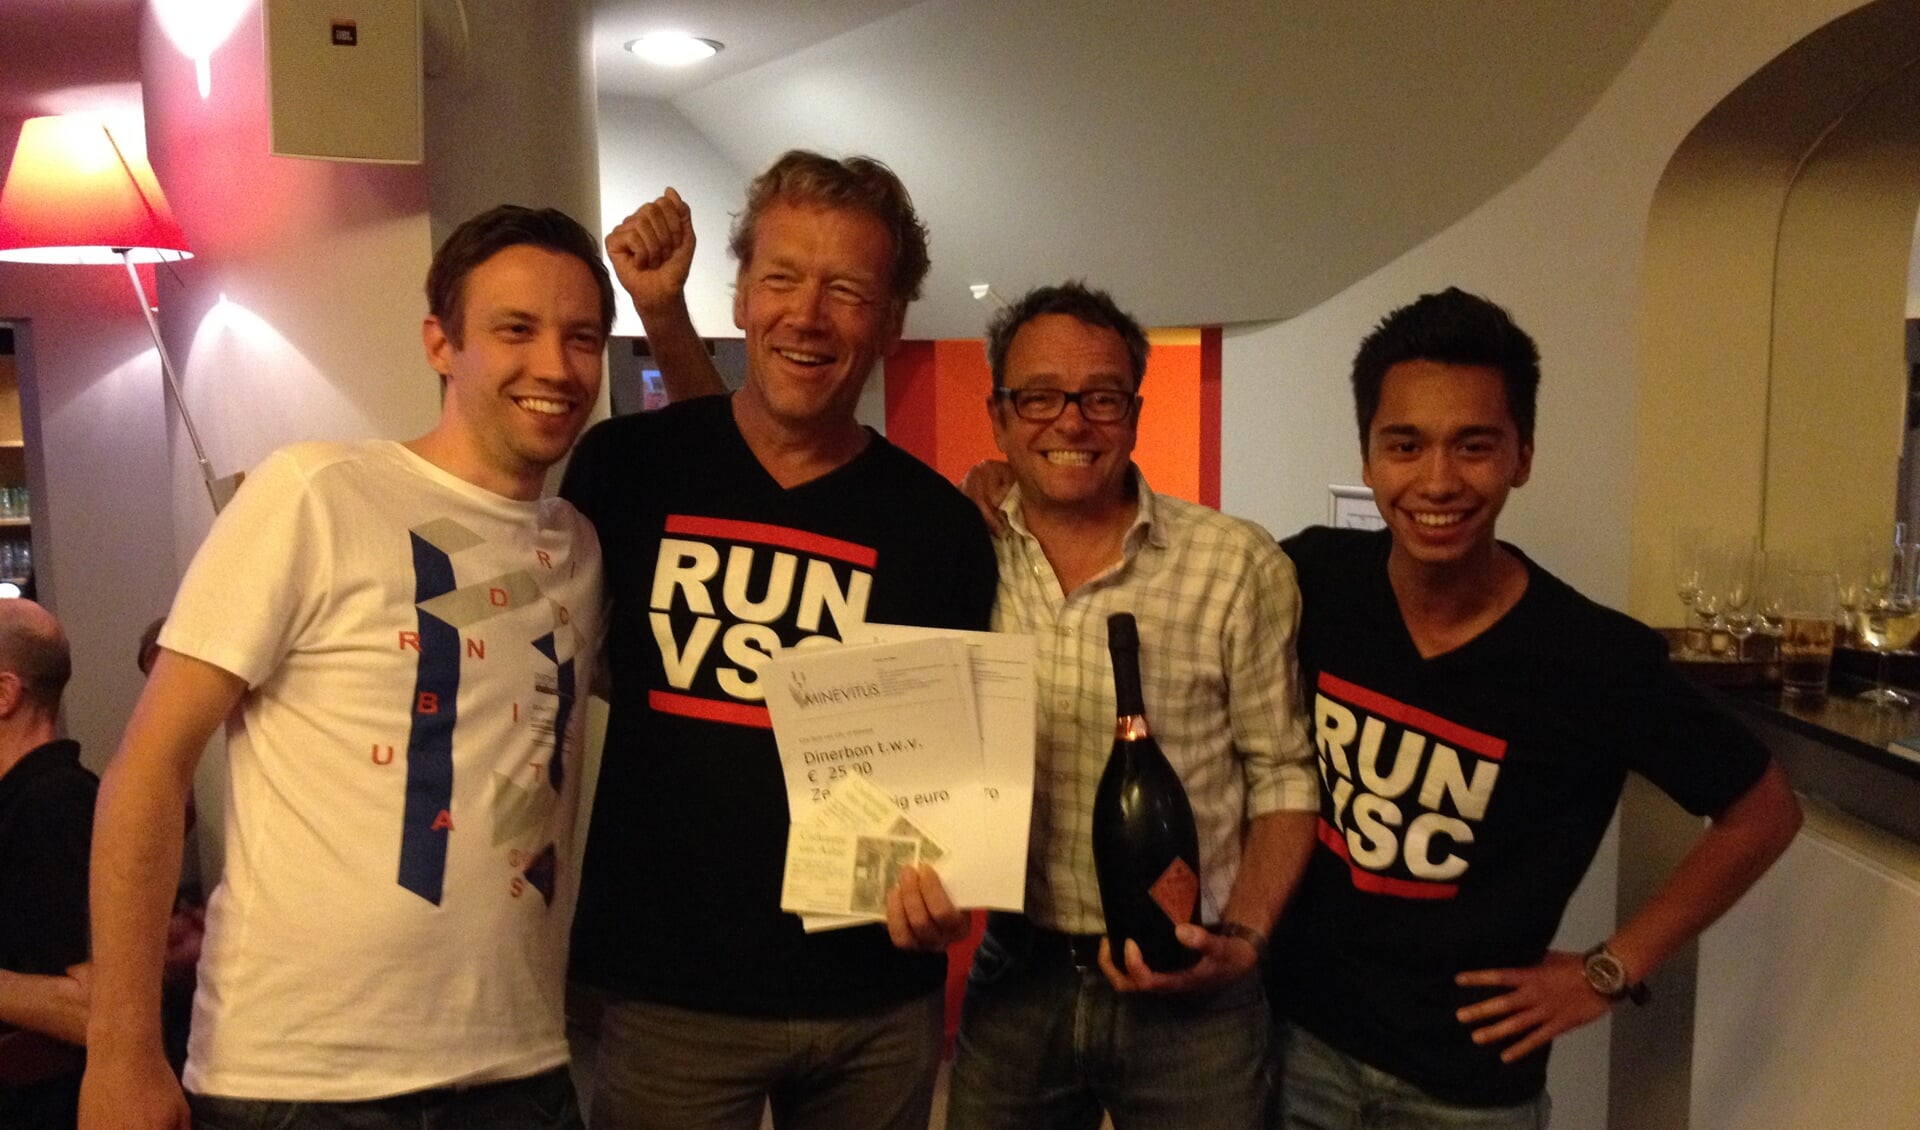 Team Vechtstede wint. Alleen Erik van Neer ontbreekt op de foto.